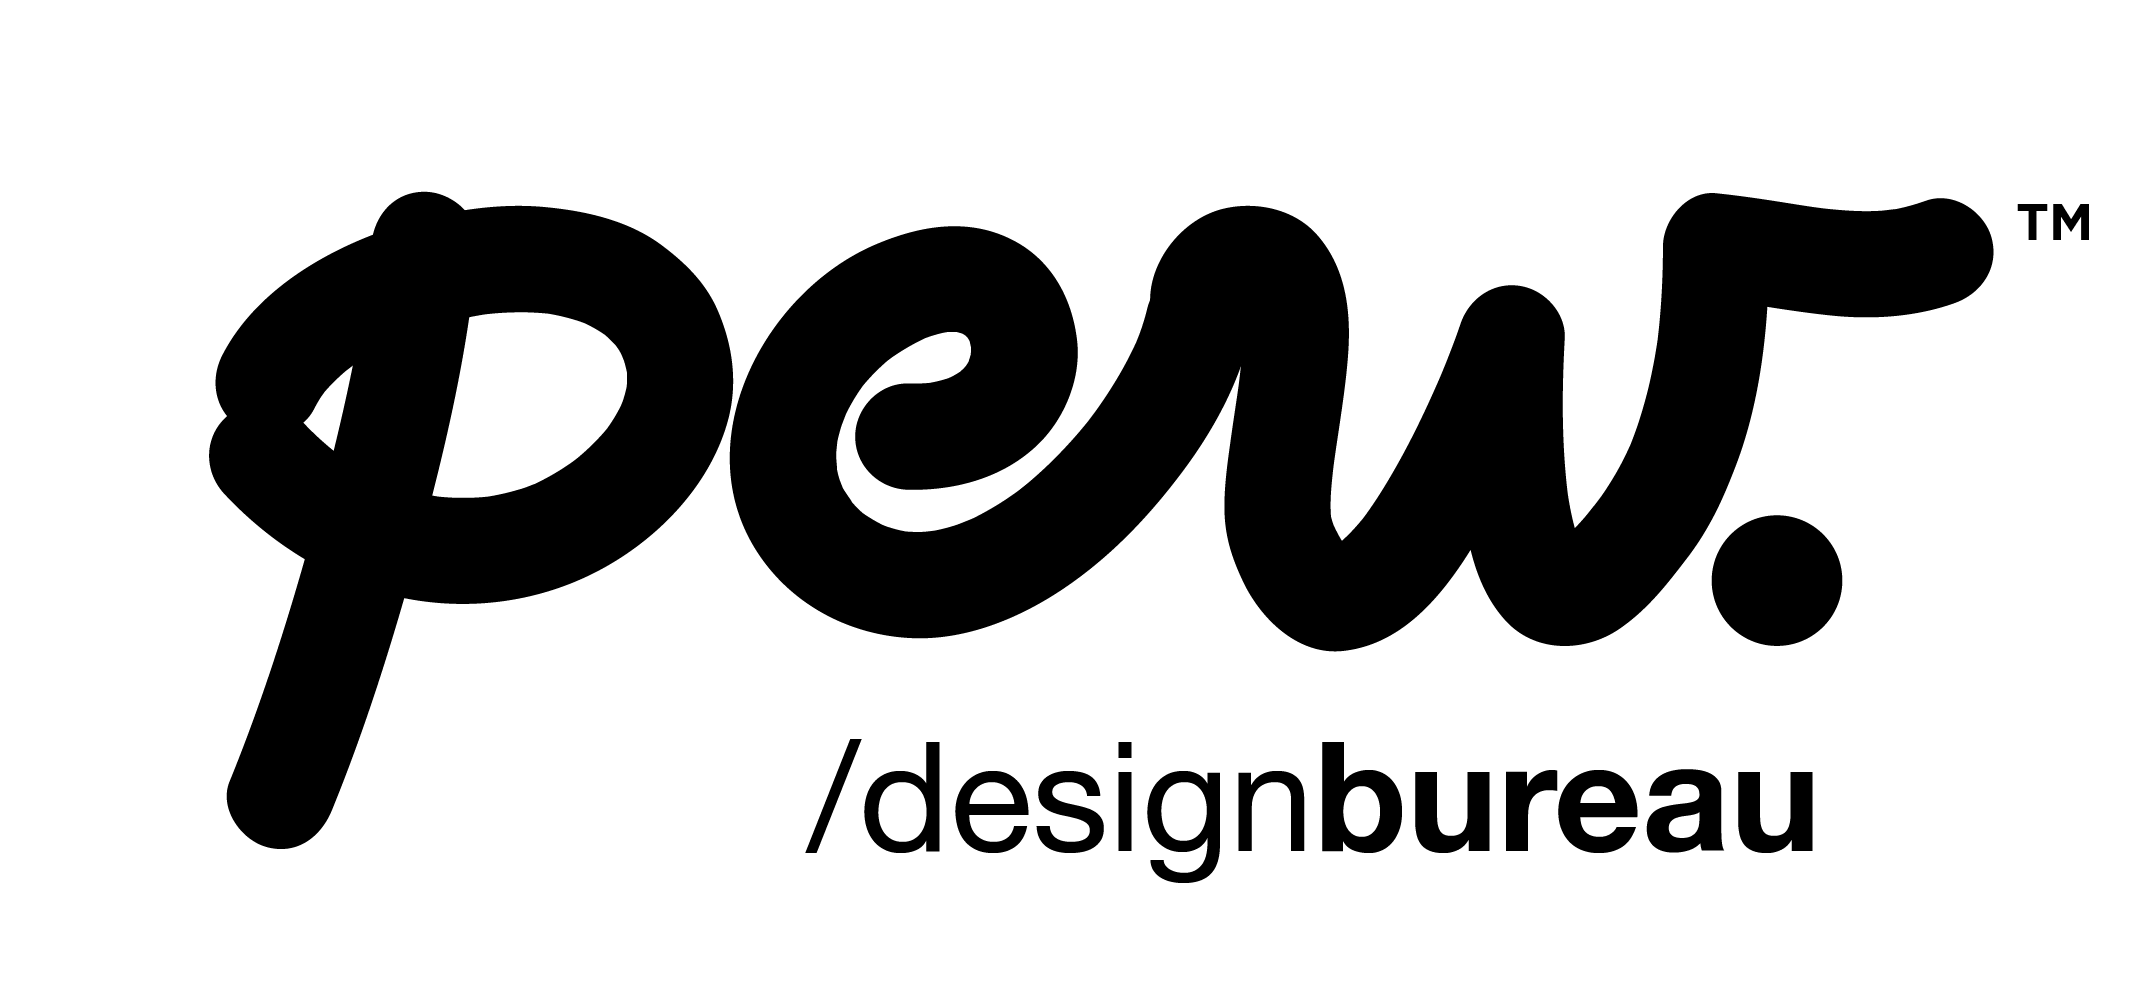 pew. design bureau